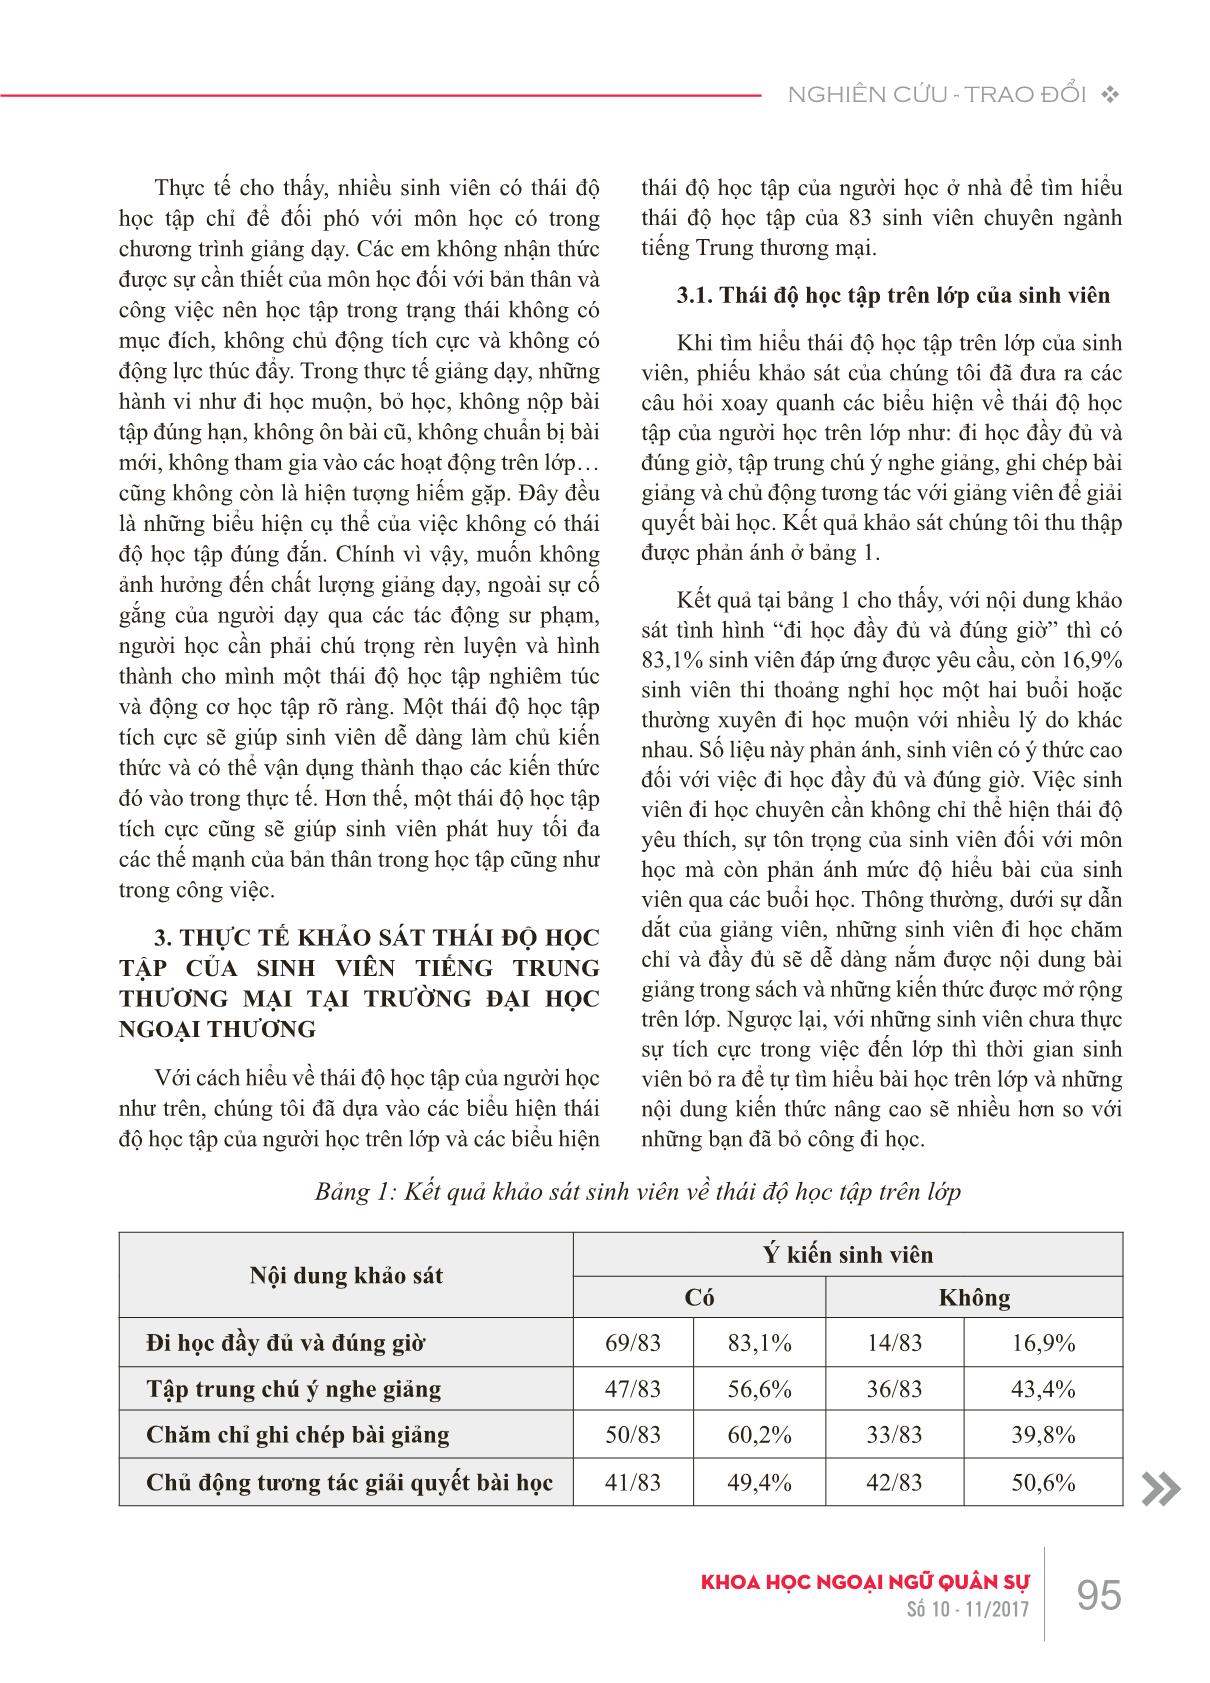 Thái độ học tập của sinh viên tiếng Trung thương mại và vấn đề chất lượng giảng dạy trang 3